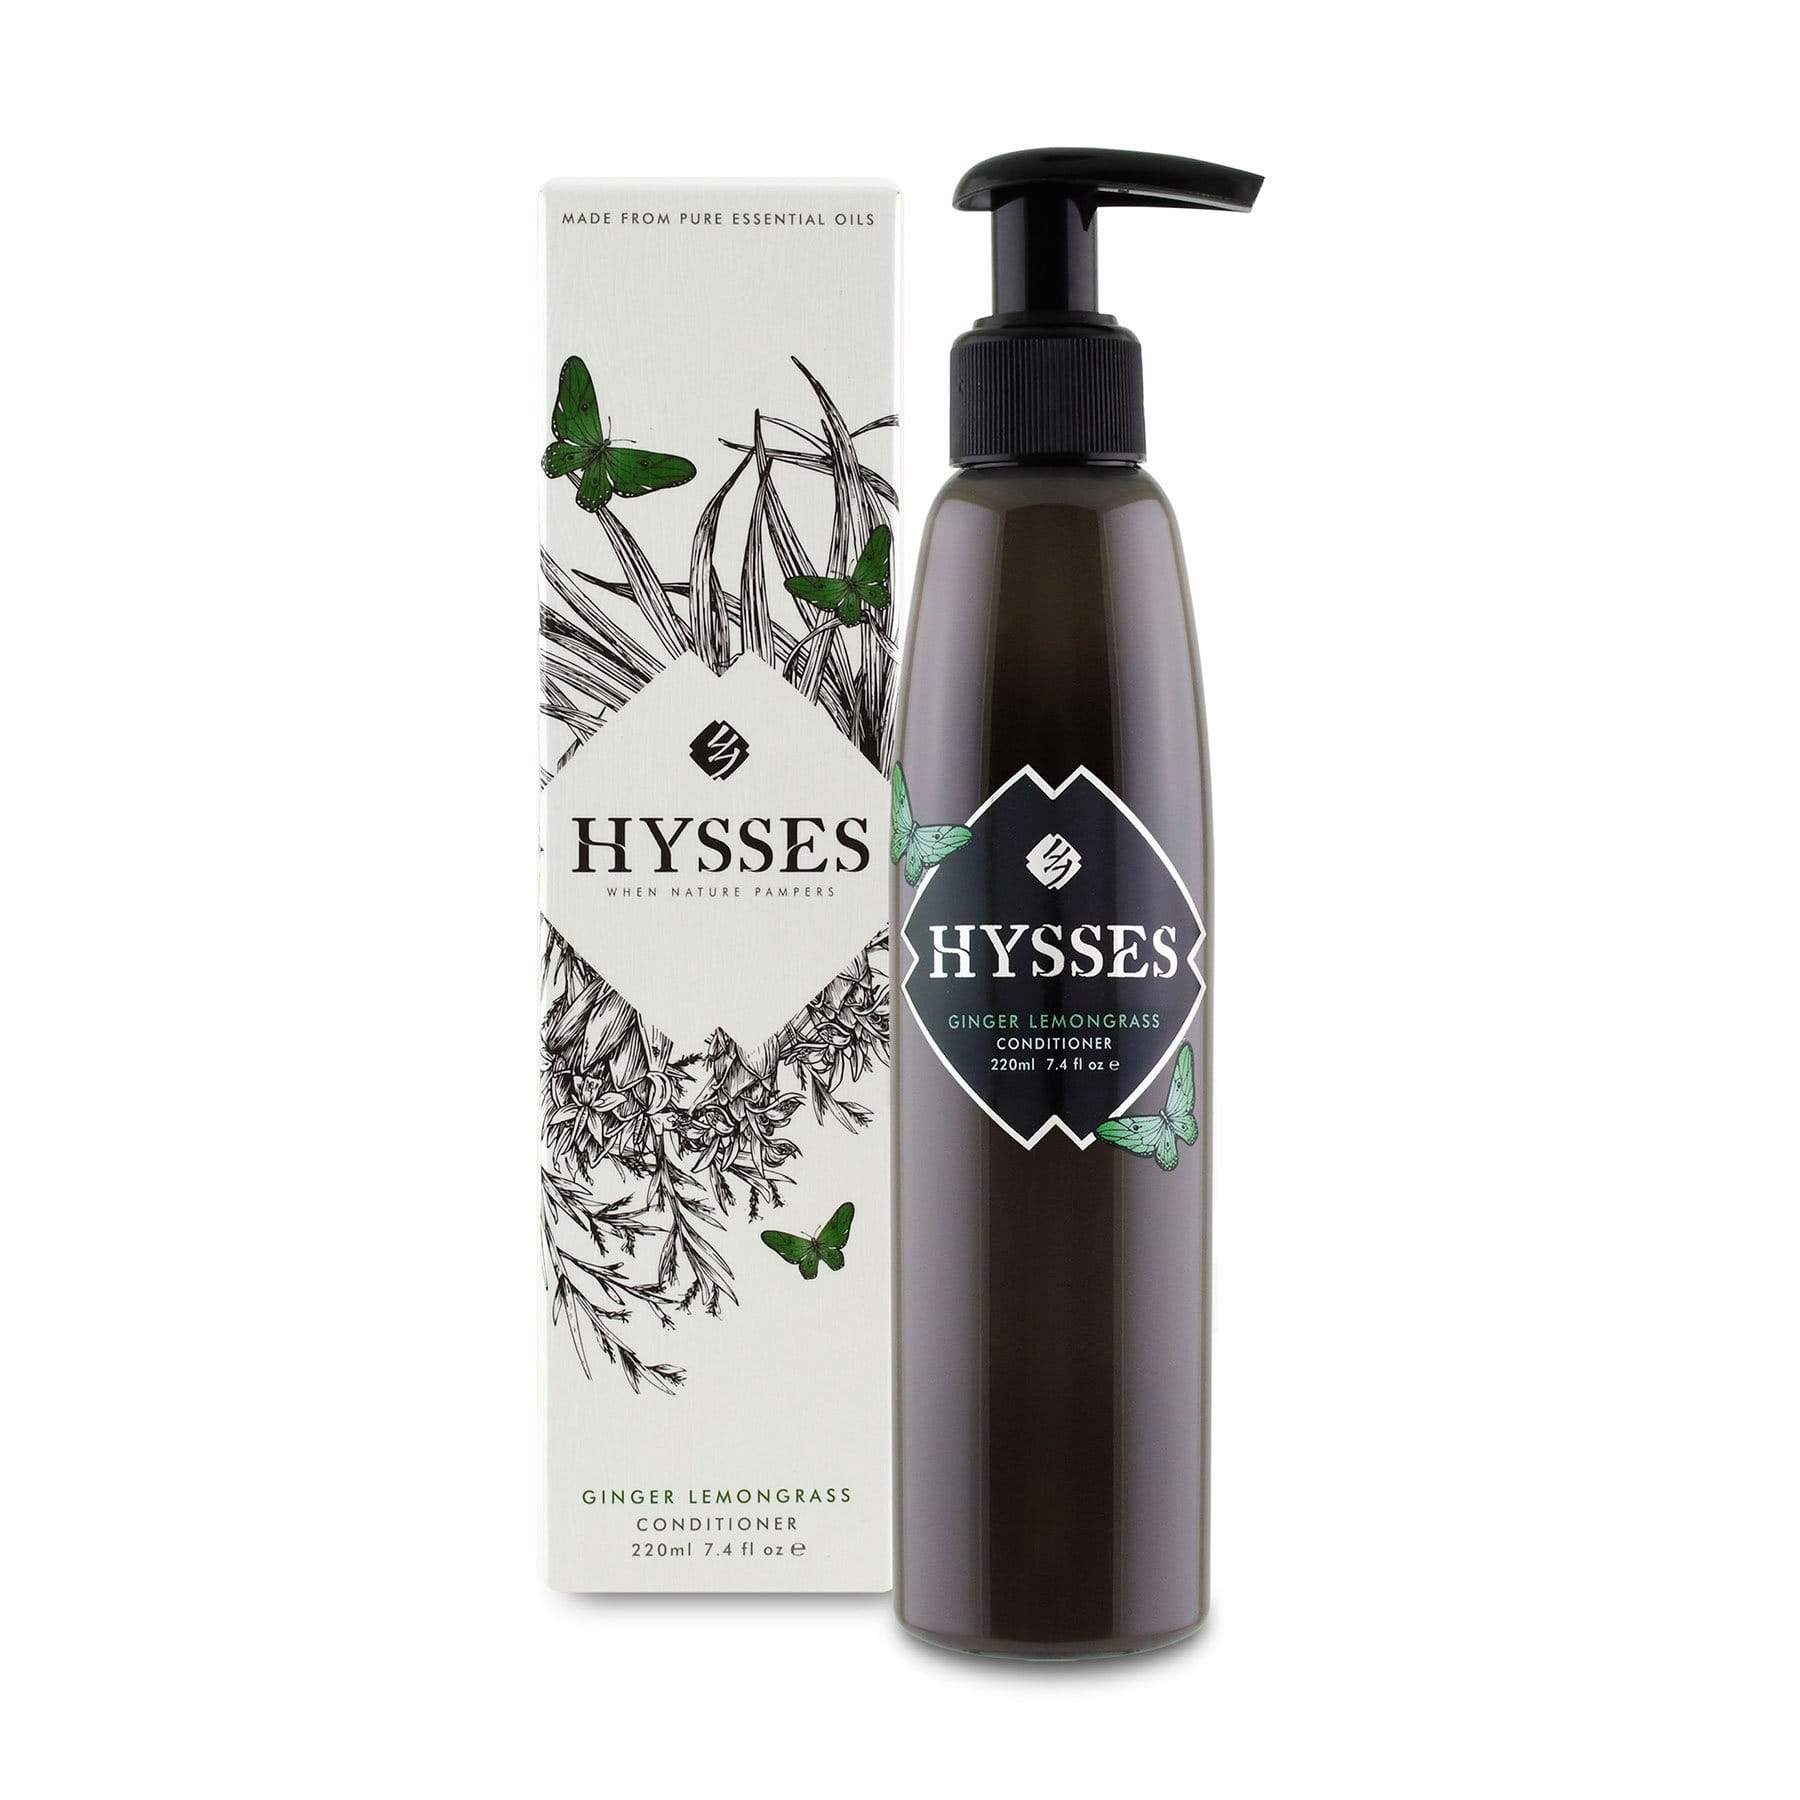 Hysses Hair Care 220ml Conditioner Ginger Lemongrass, 220ml